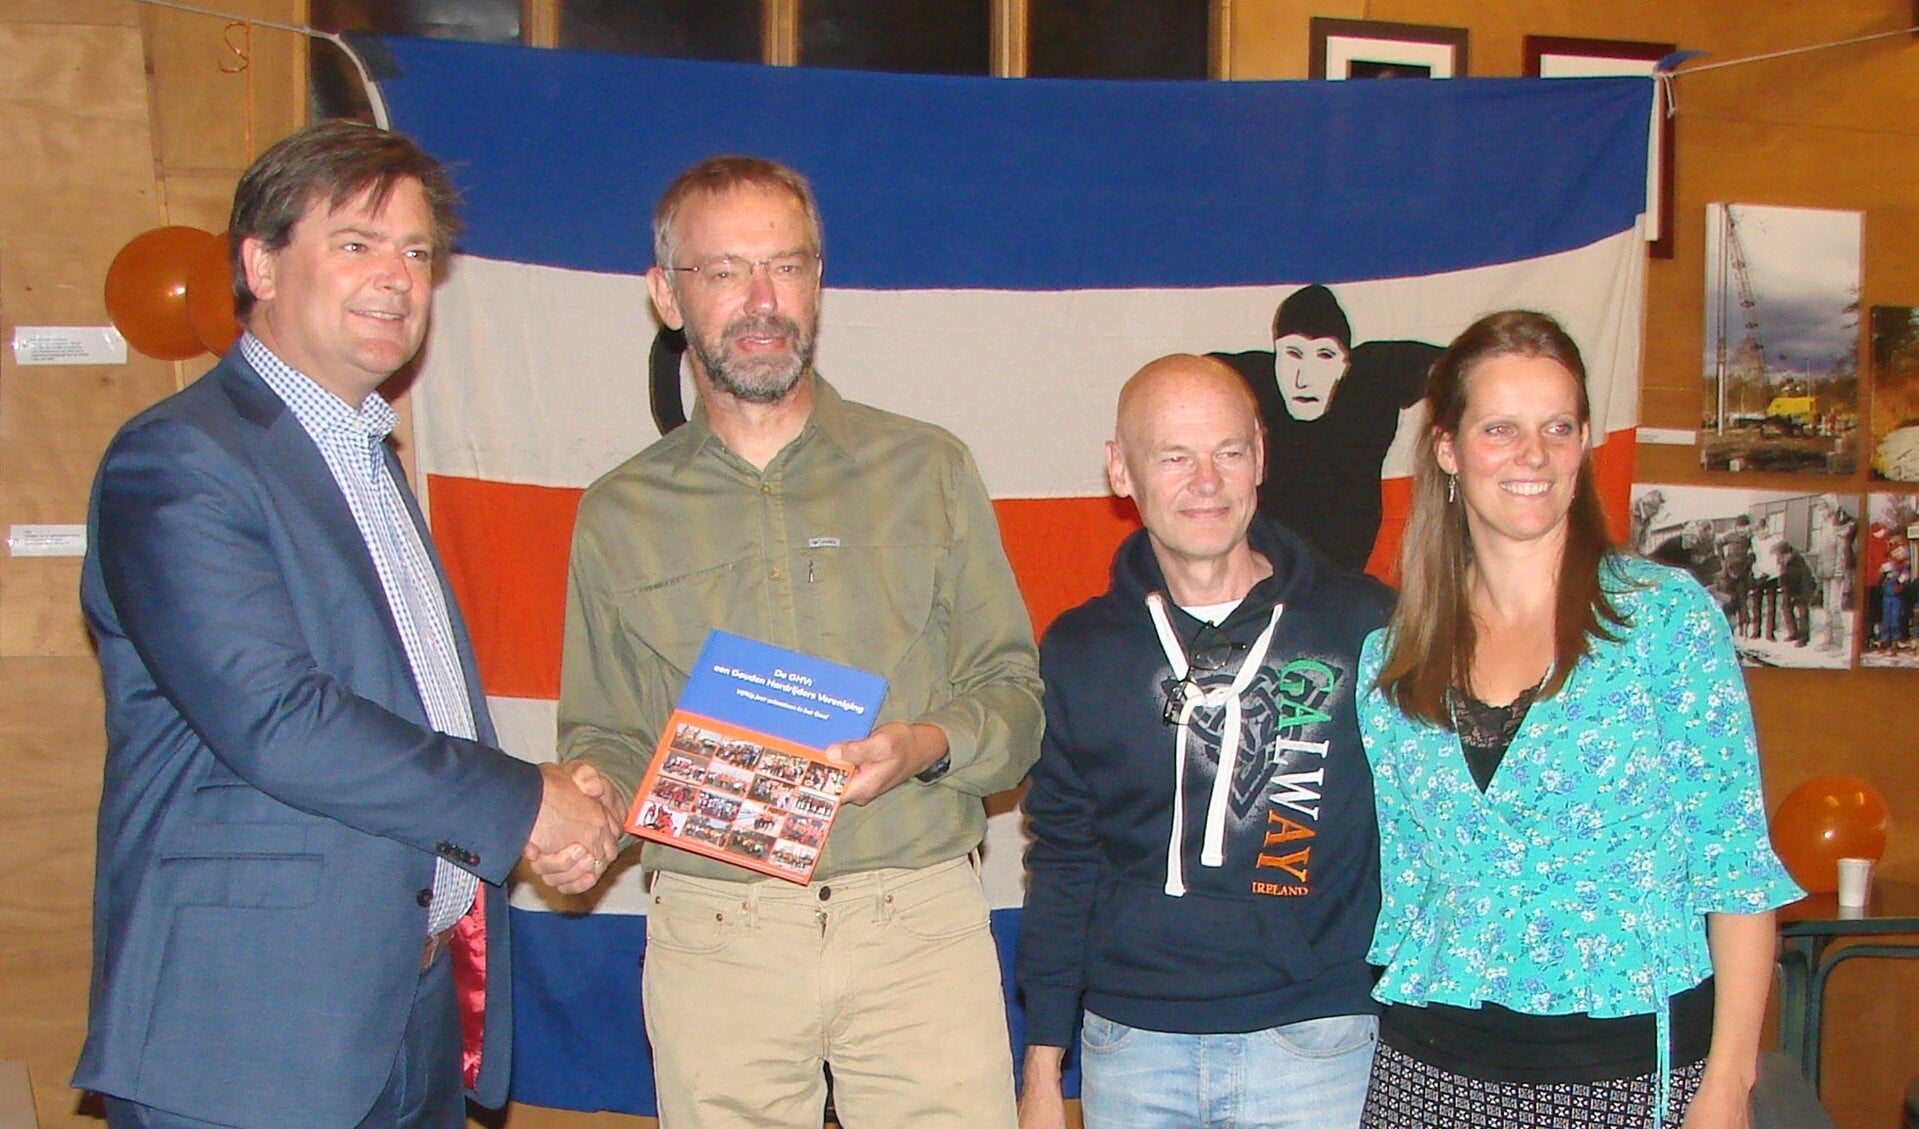 Wethouder Floris Voorink (links) neemt het eerste exemplaar van het jubileumboek in ontvangst uit handen van Marinus Kamphorst vergezeld door medecommissieleden Wim Dral en Anneleen Post.